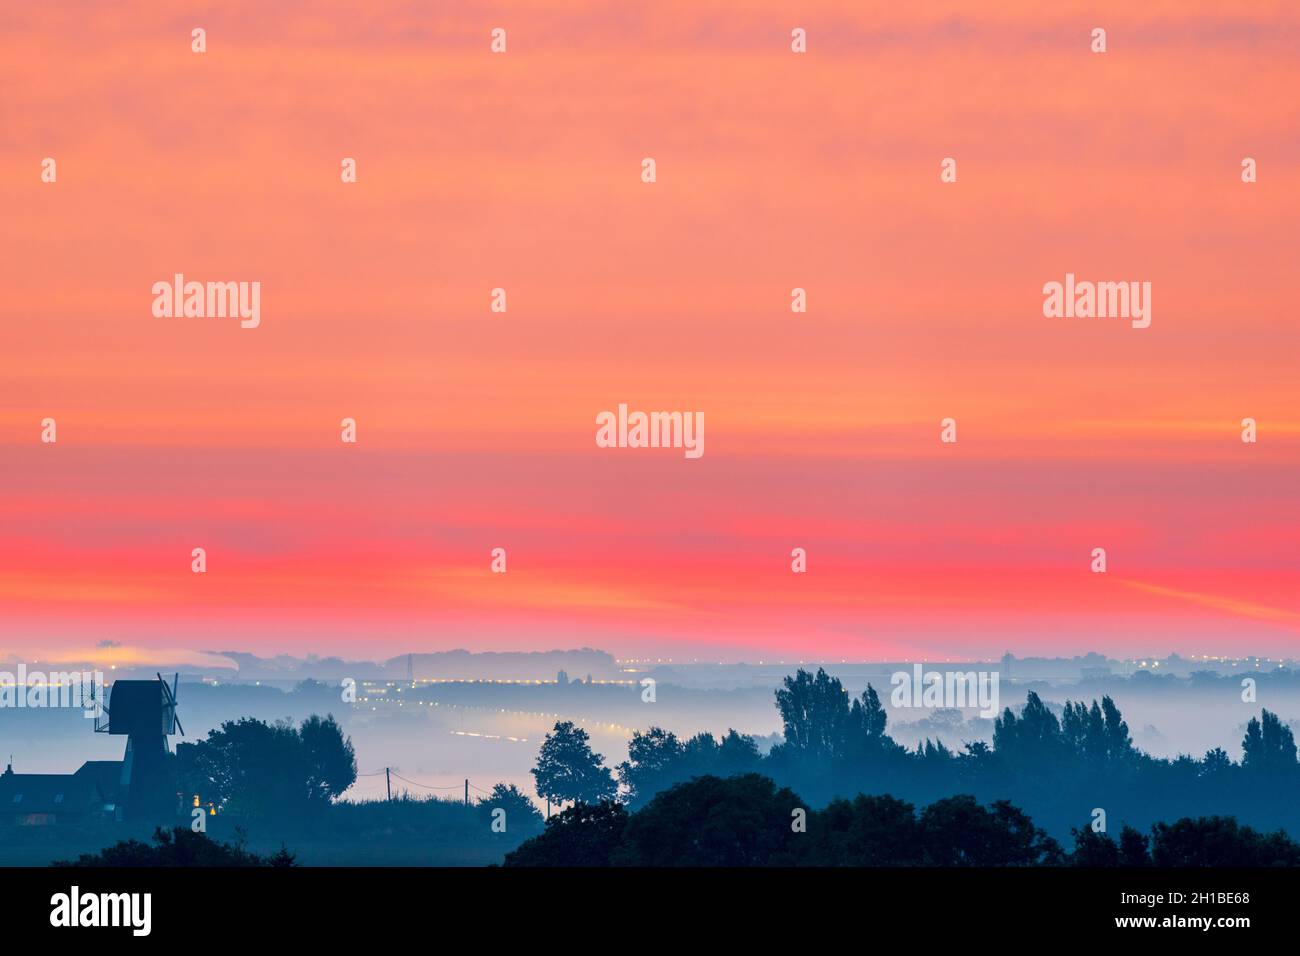 Le ciel d'aube rouge au-dessus d'une brume couvrait le Kent Paysage avec quelques arbres et un ancien moulin à vent silhoueté contre la brume de mer.Le ciel est rouge et des bandes orange sont horizontales.Horizon bas dans le cadre. Banque D'Images